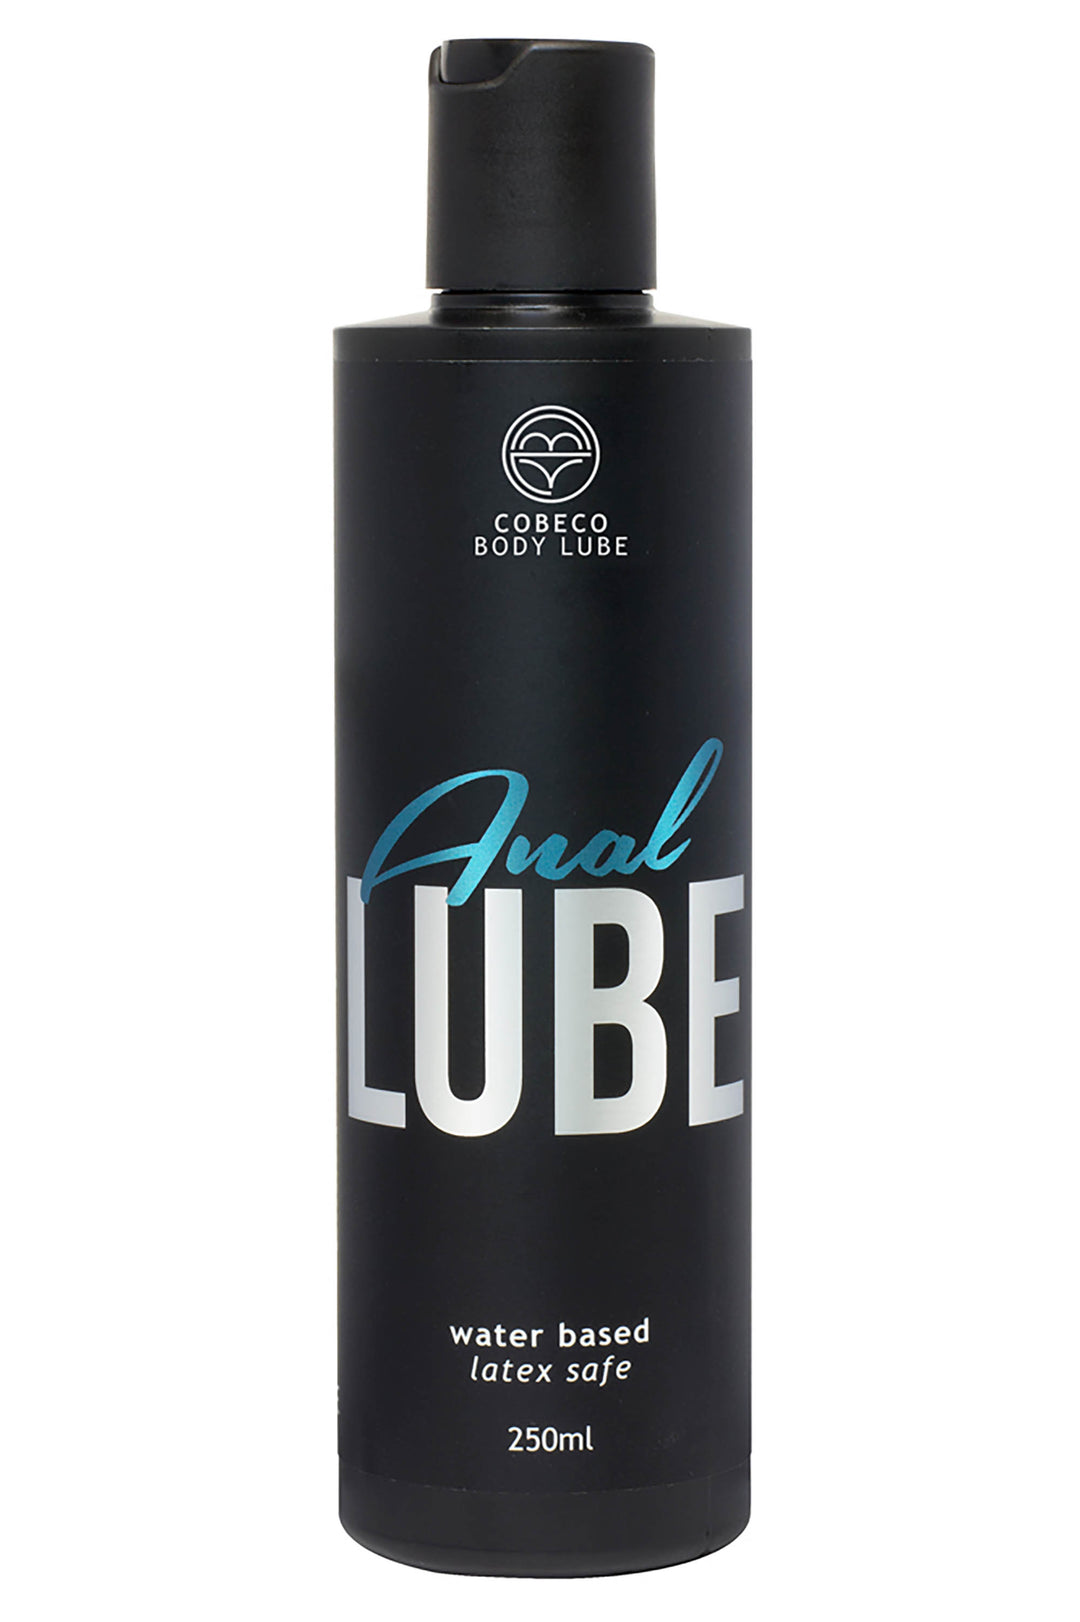 Cobeco Anal Lube a base d'acqua è un lubrificante intimo dalla texture extra densa e scorrevole.